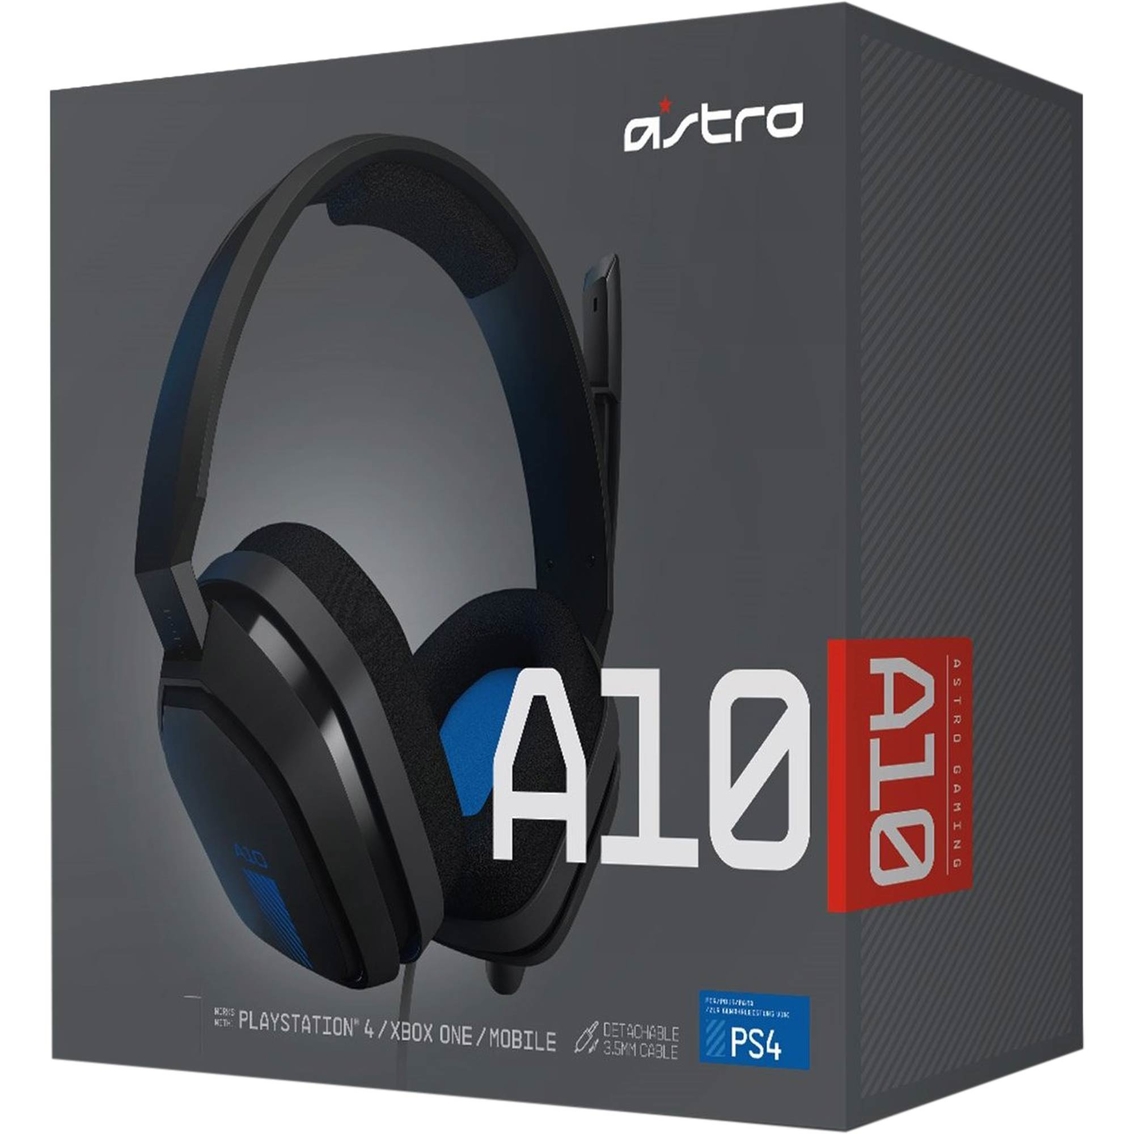 Astro A10 Headset Ps4 Headphones Microphones Home Office School Shop The Exchange